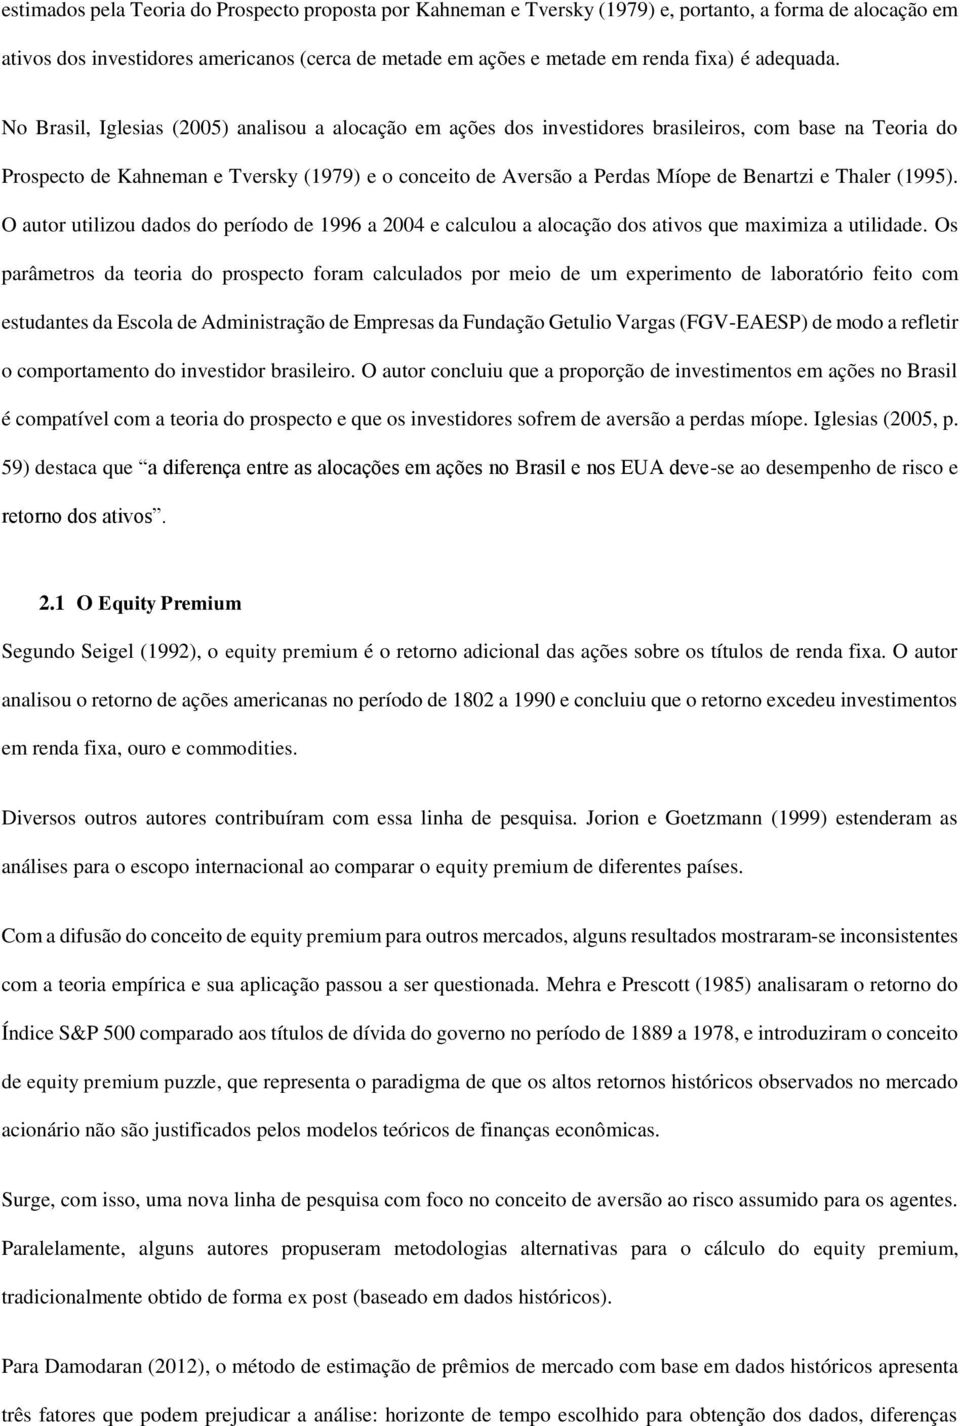 No Brasil, Iglesias (2005) analisou a alocação em ações dos investidores brasileiros, com base na Teoria do Prospecto de Kahneman e Tversky (1979) e o conceito de Aversão a Perdas Míope de Benartzi e